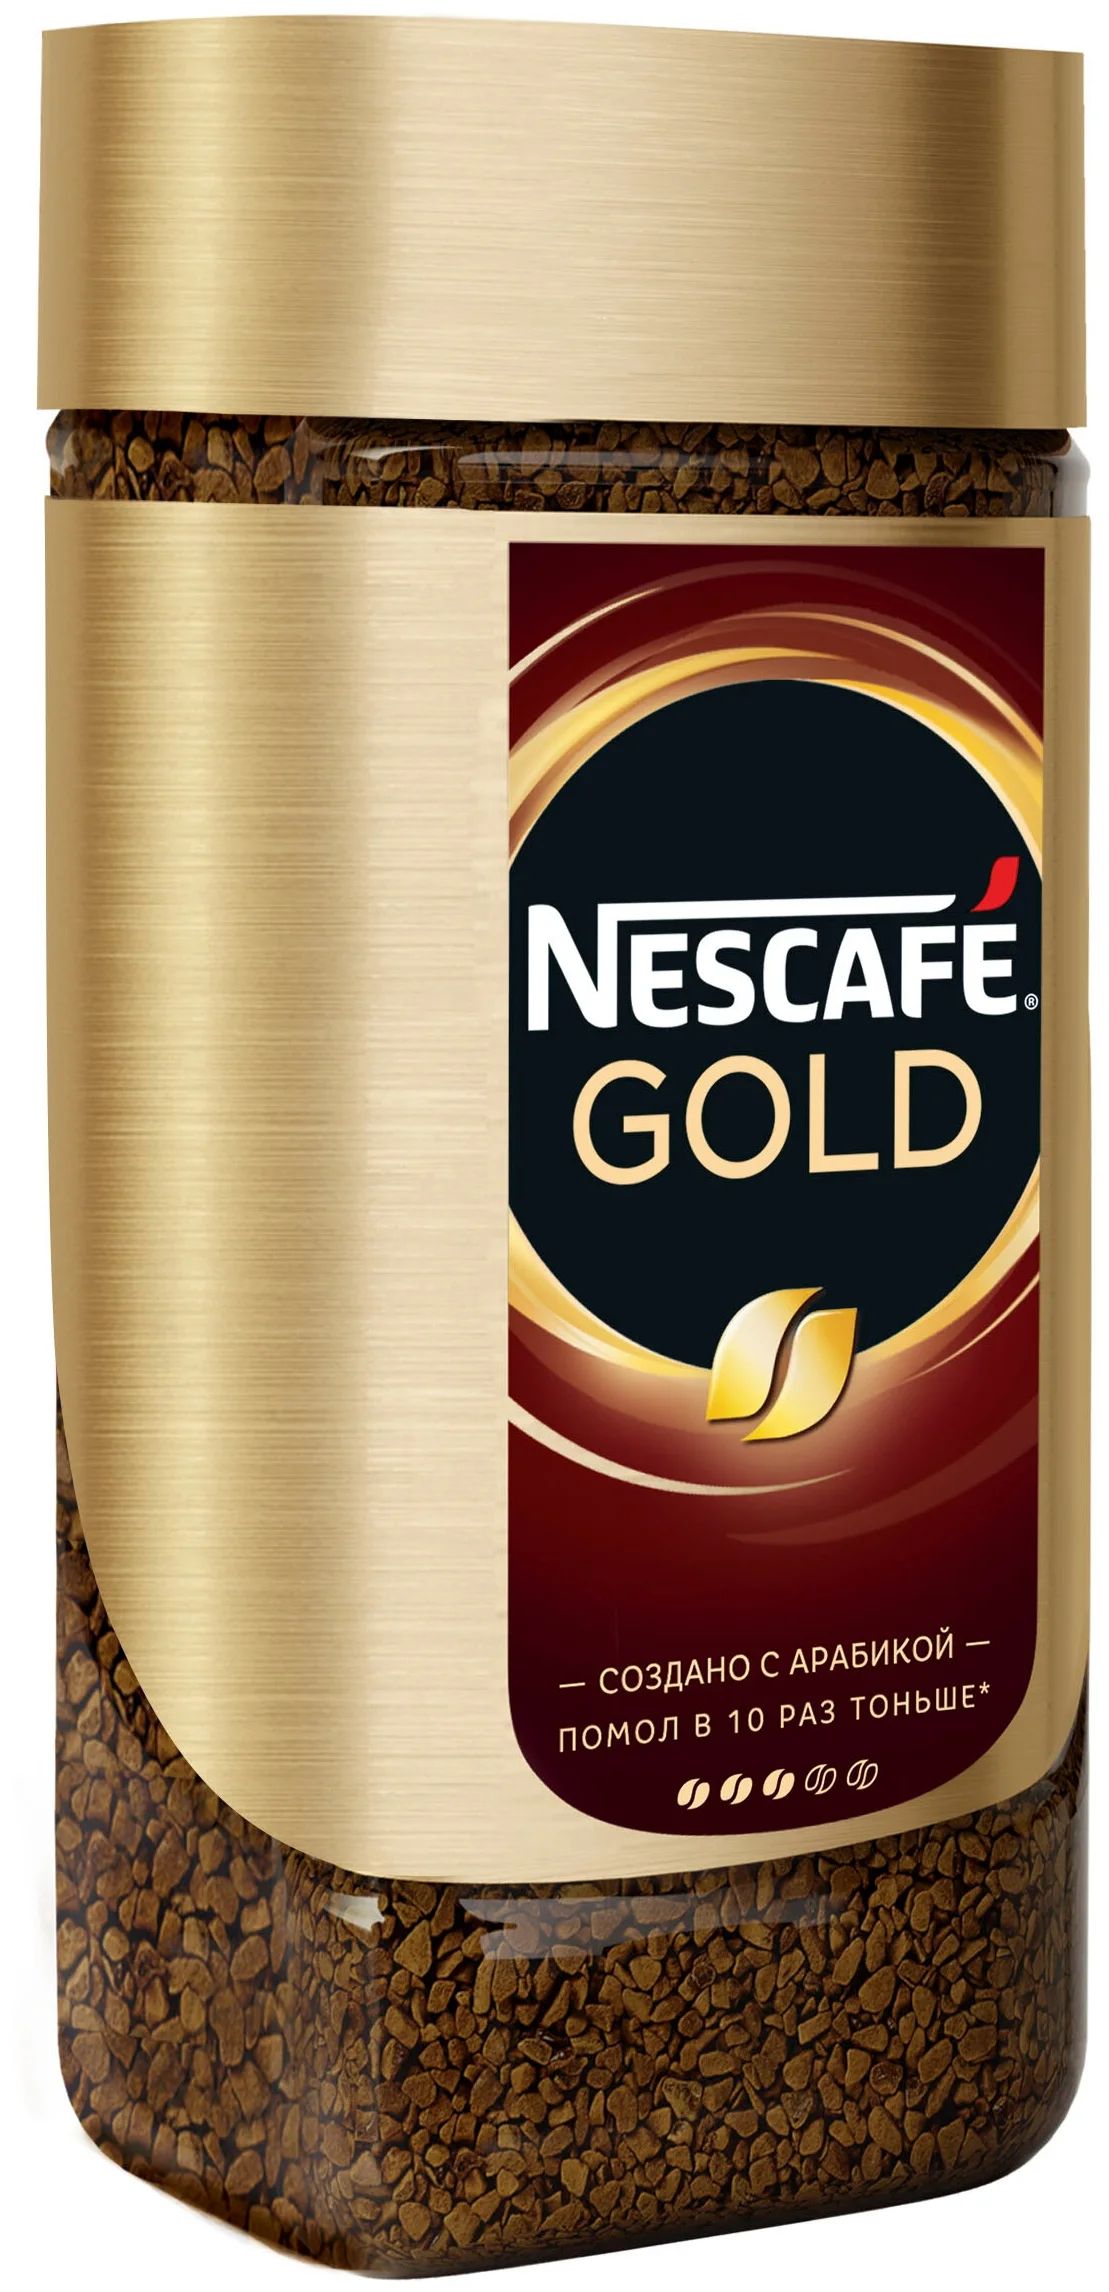 Nescafe Gold, стеклянная банка - интенсивность: 3